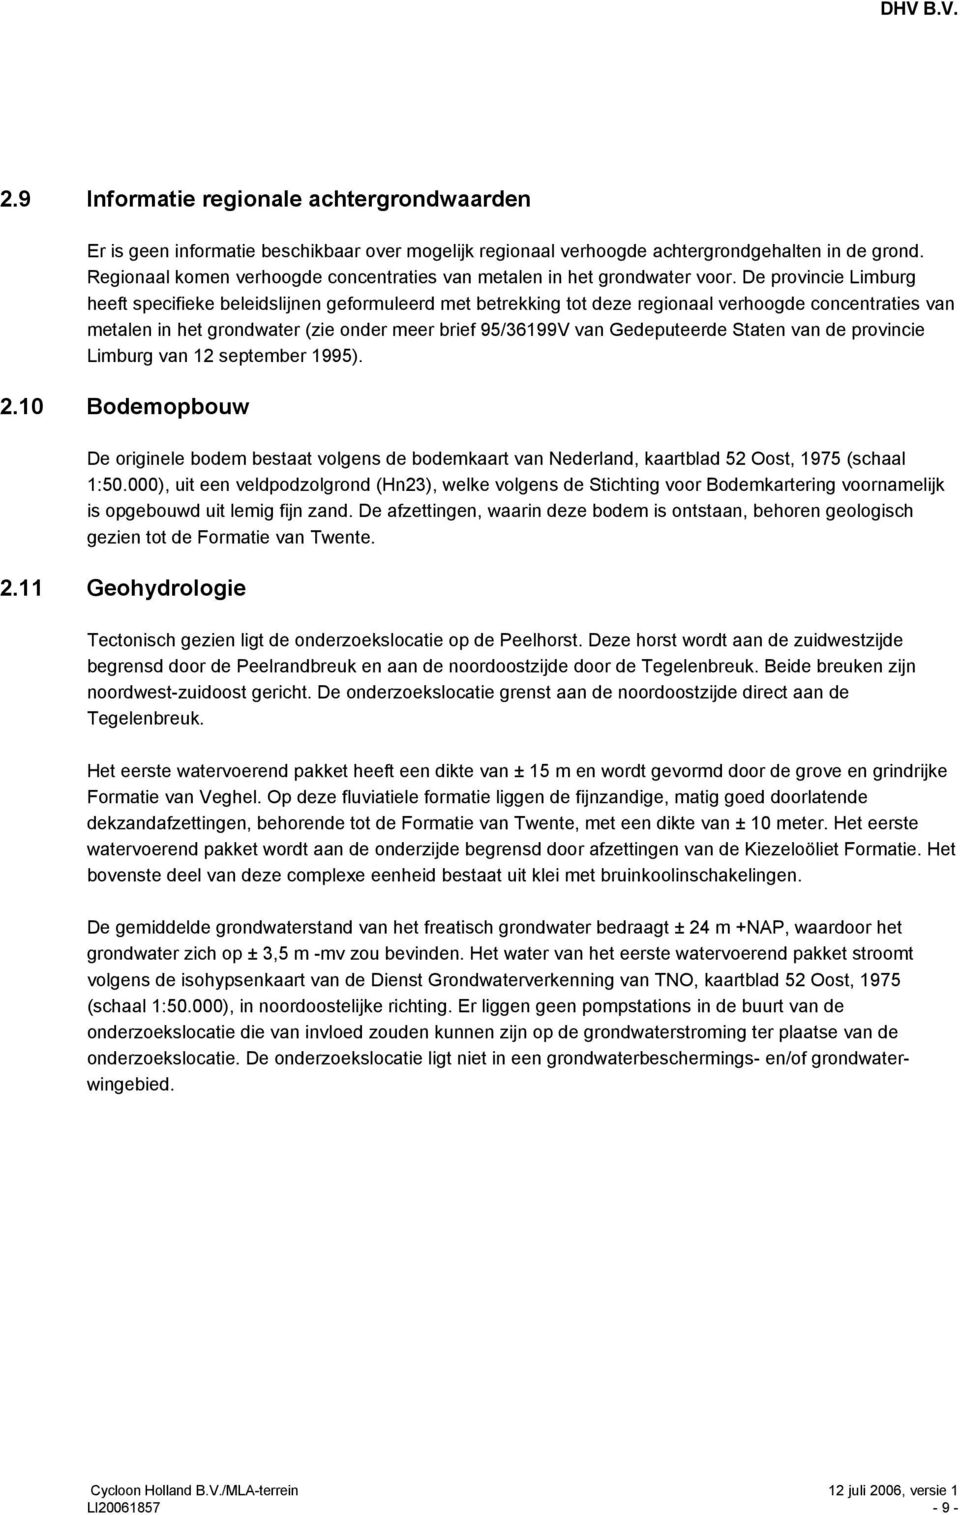 De provincie Limburg heeft specifieke beleidslijnen geformuleerd met betrekking tot deze regionaal verhoogde concentraties van metalen in het grondwater (zie onder meer brief 95/36199V van